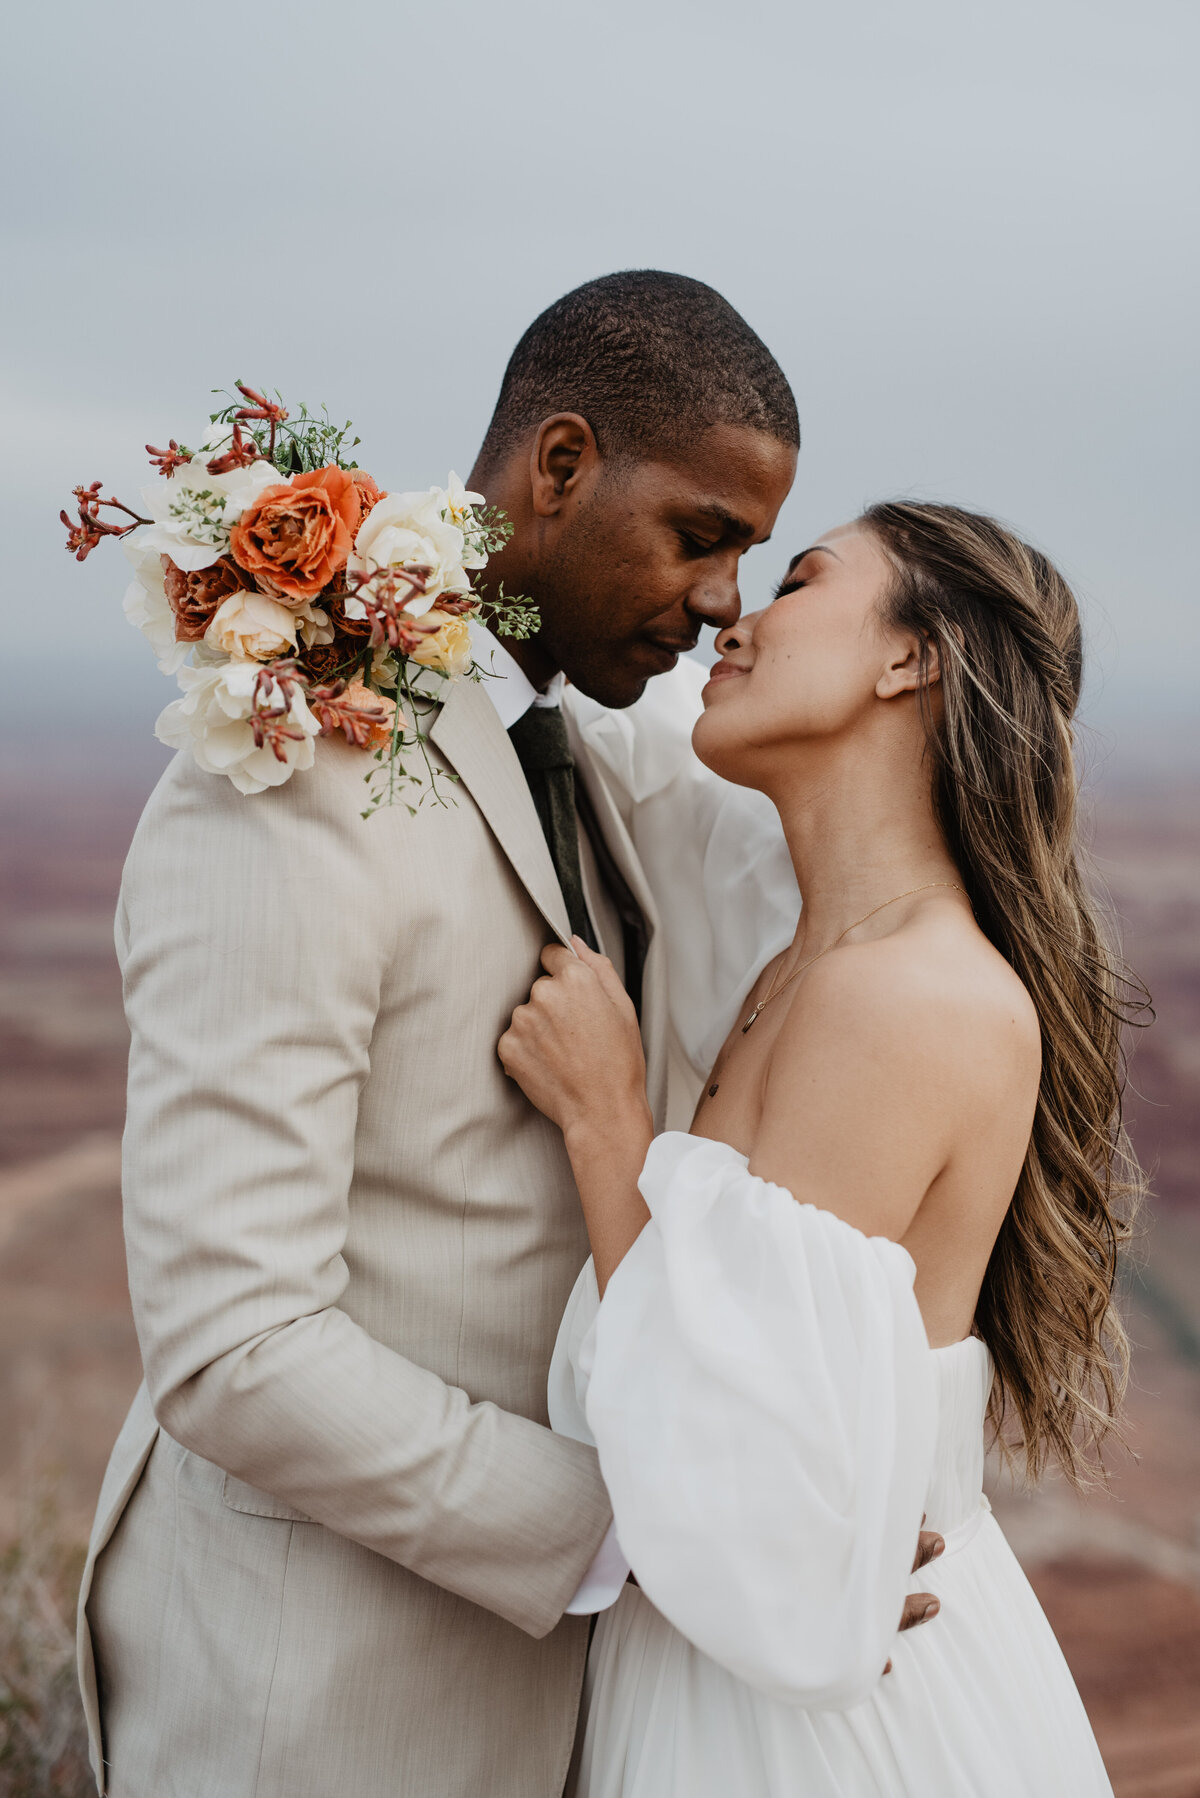 Utah Elopement Photographer captures bride touching groom's nose